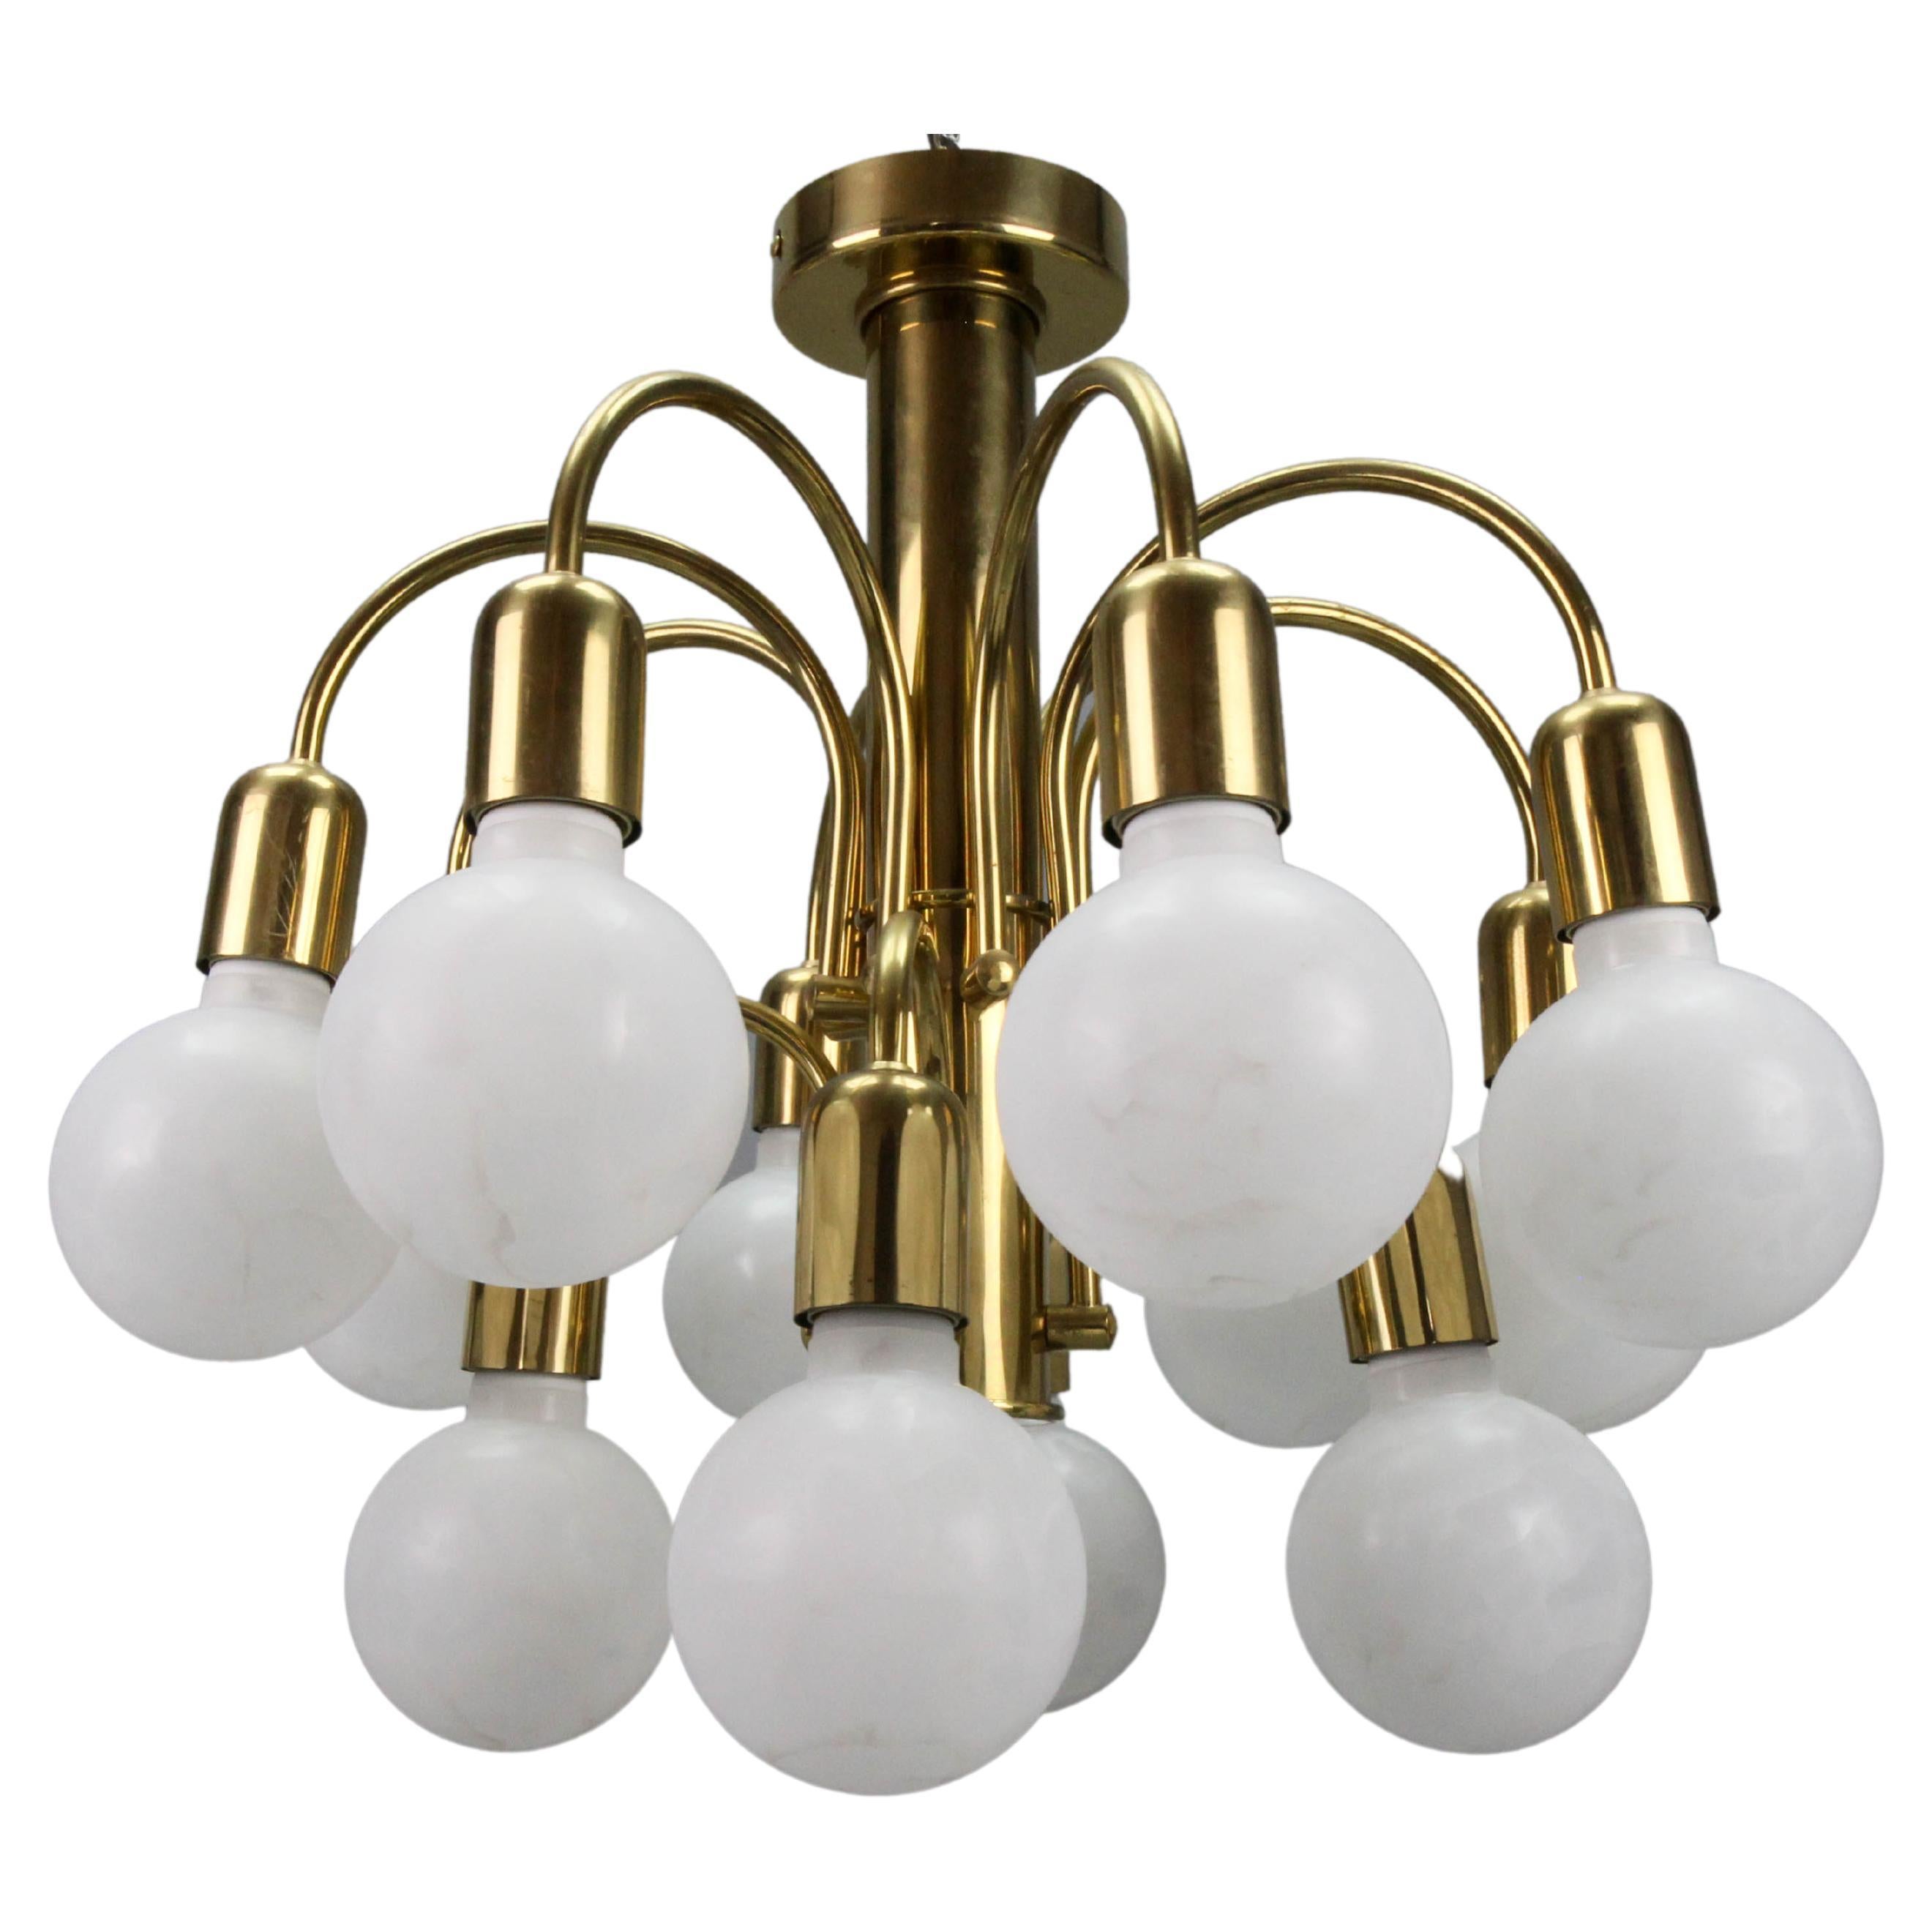 Mid-Century Modern brass twelve-light sputnik flush mount chandelier, the 1970s.
An elegant German Mid-century modern brass flush mount chandelier from the 1970s. Twelve sockets for E27 (E26) size light bulbs.
For the photo shoot, we used E27 (E26)